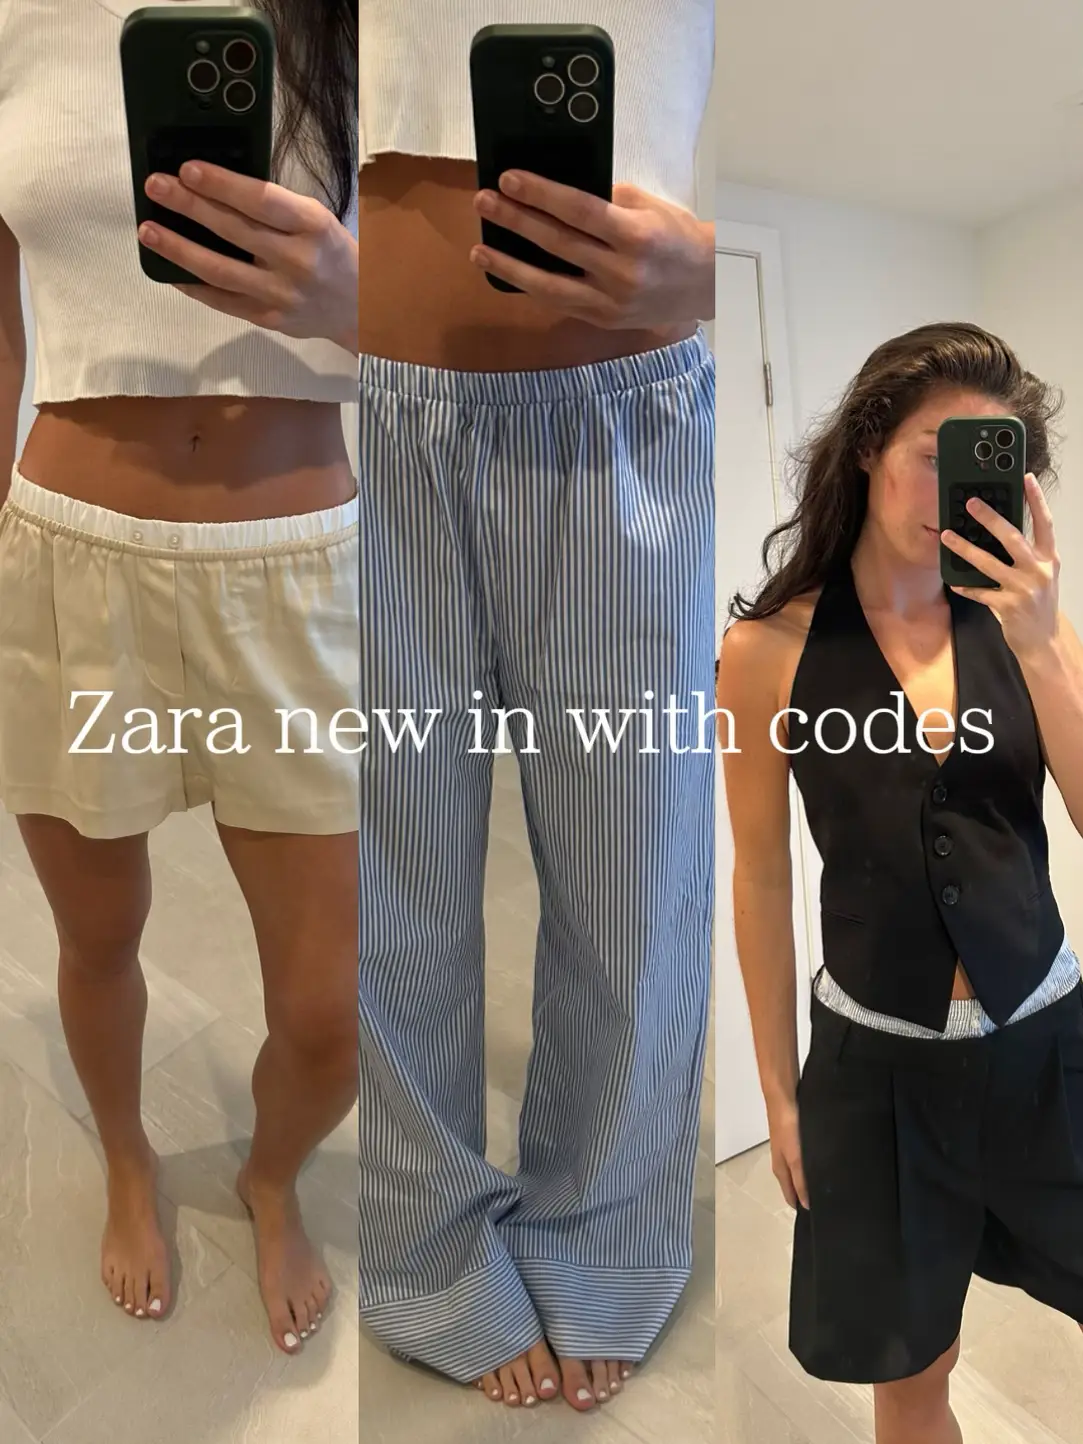 Zara coupon code - Lemon8 Search